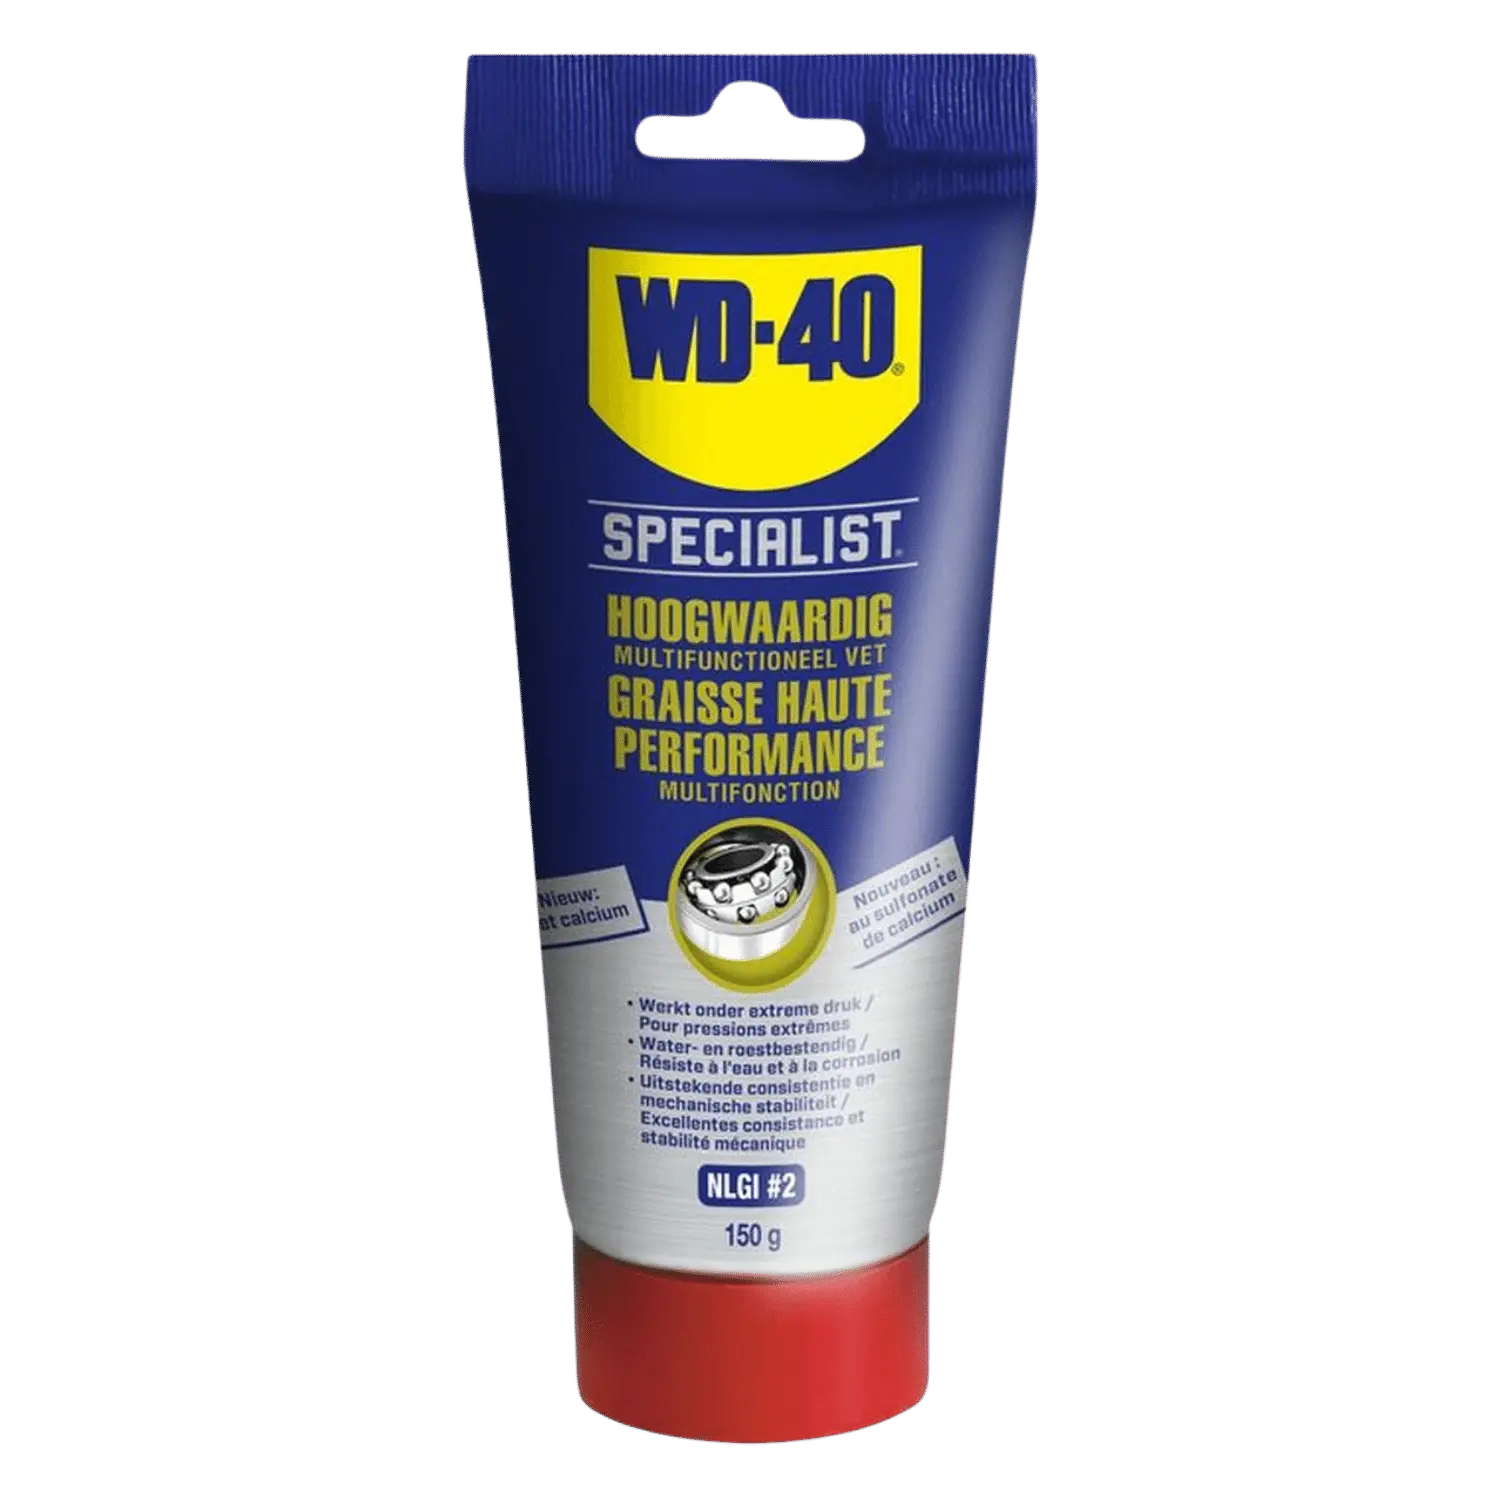 WD-40 Specialist Vet voor smering, bescherming en reiniging van machines en gereedschap (400g)